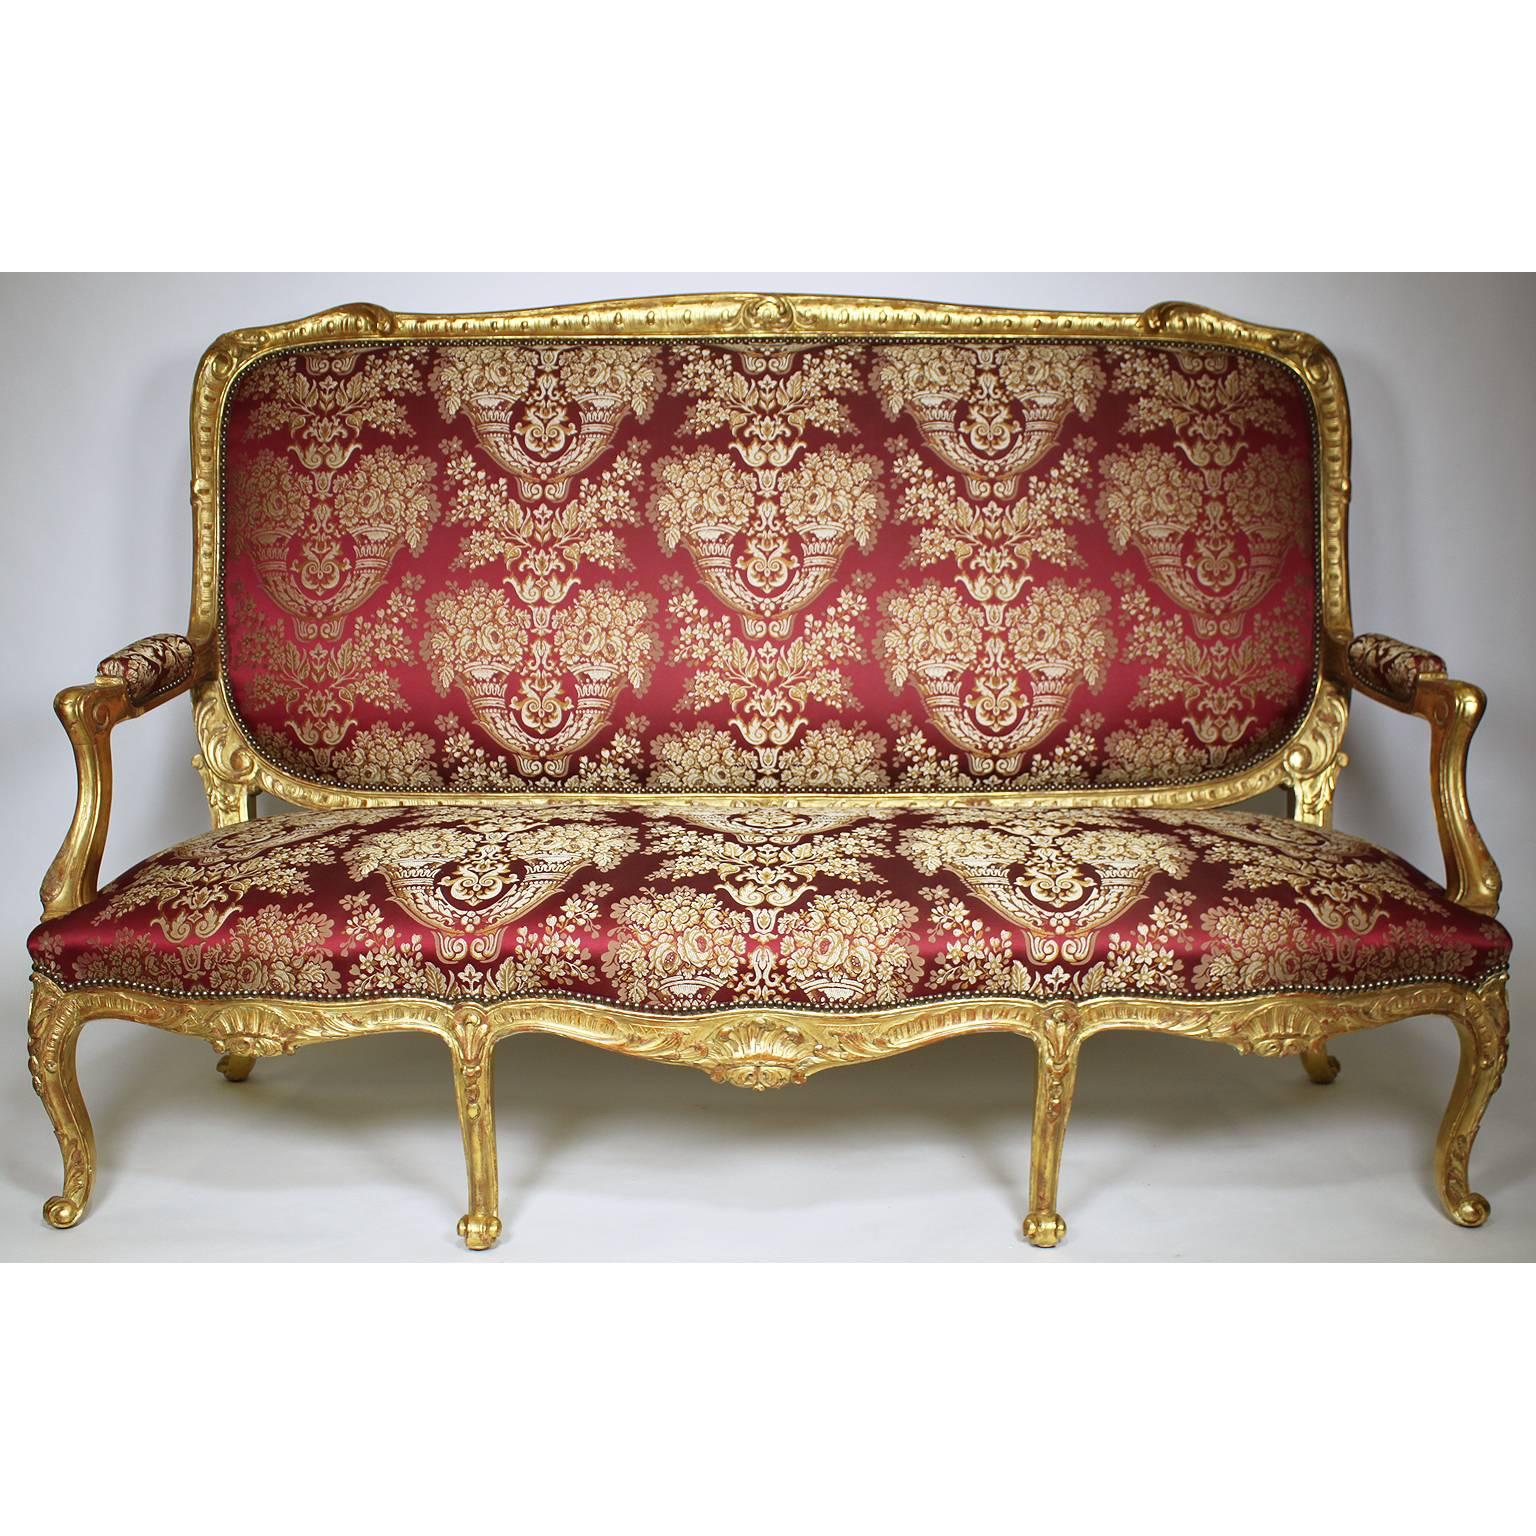 Très bel ensemble de salon palatial français du XIXe siècle de style Louis XV en bois doré sculpté, comprenant un canapé et quatre fauteuils à la reine, tous de grande taille, à haut dossier et récemment retapissés, Paris, vers 1880.

Mesures :